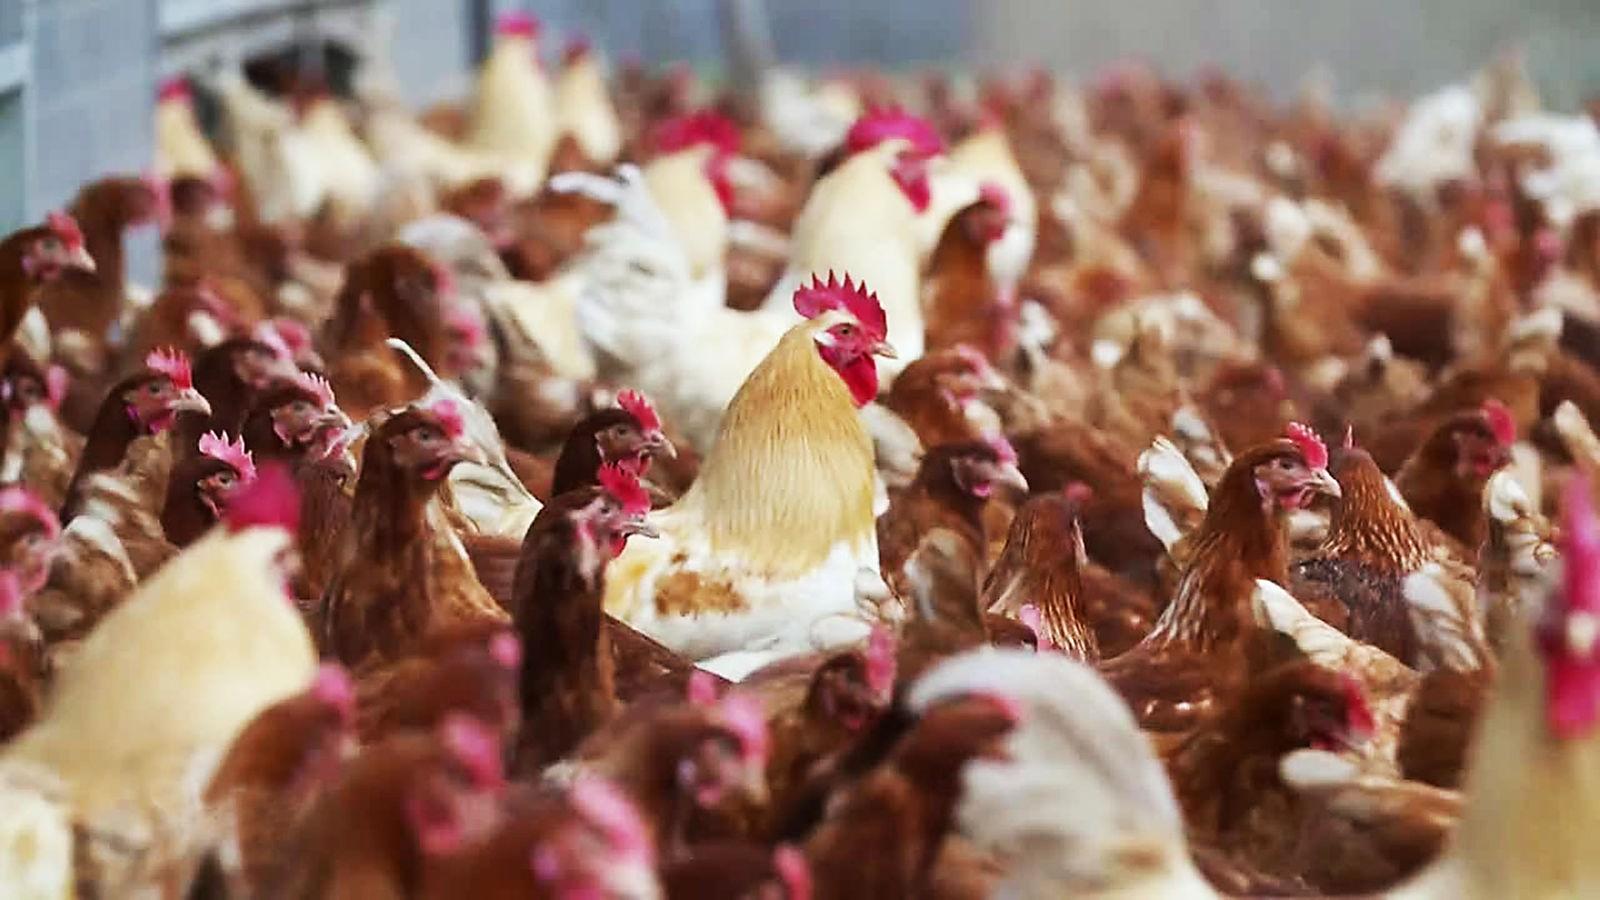 Hühner auf Landstraße mit Warnweste unterwegs: Besitzerin erklärt